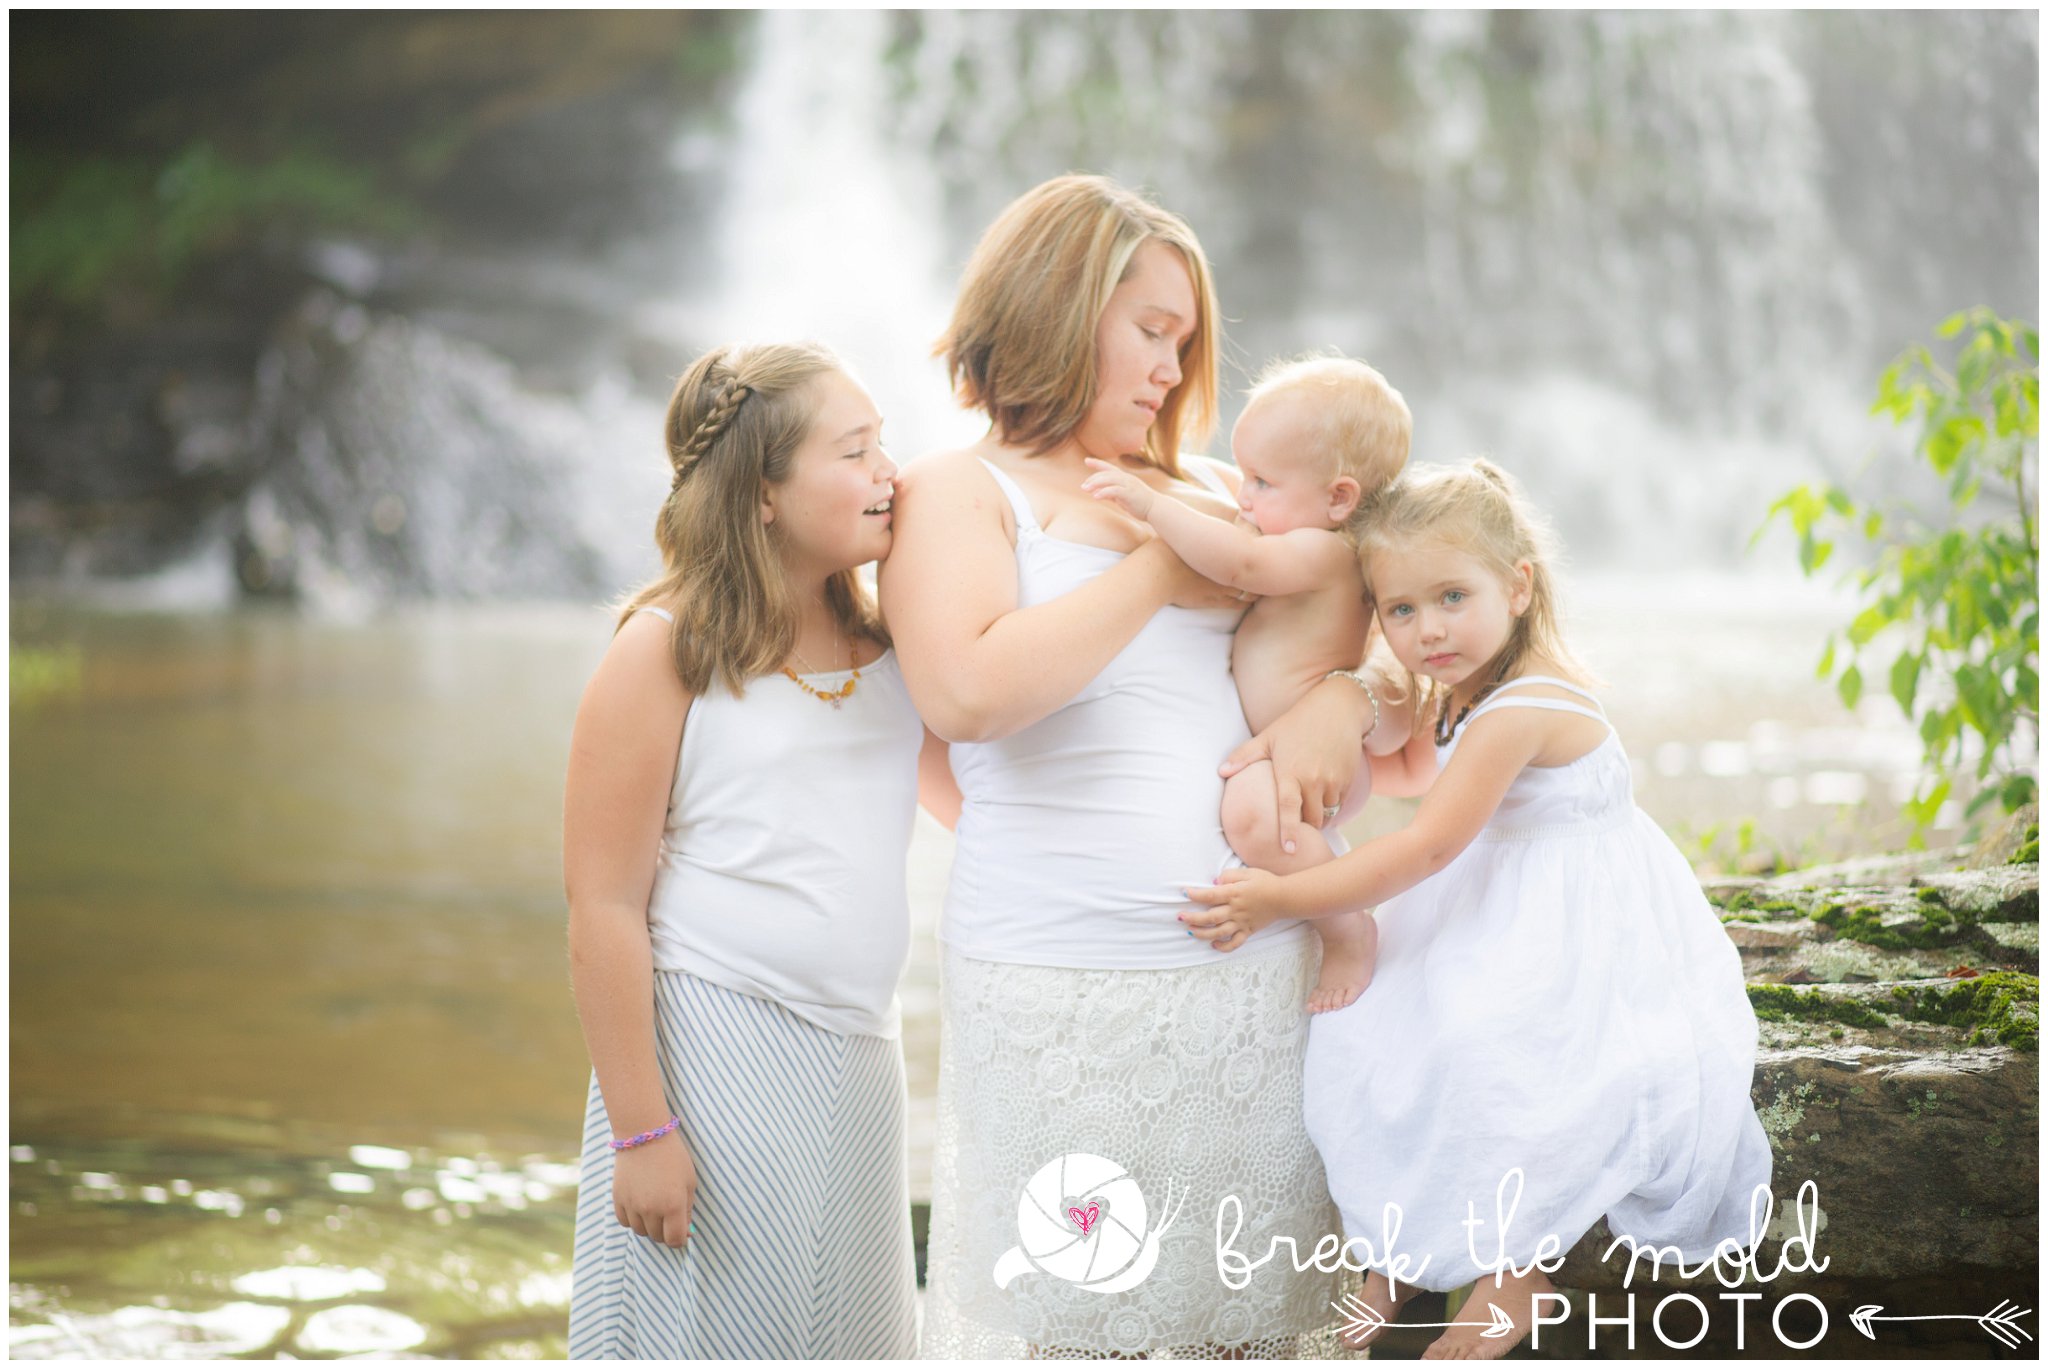 break-the-mold-photo-nursing-mothers-waterfall-women-celebrate-beauty_5413.jpg